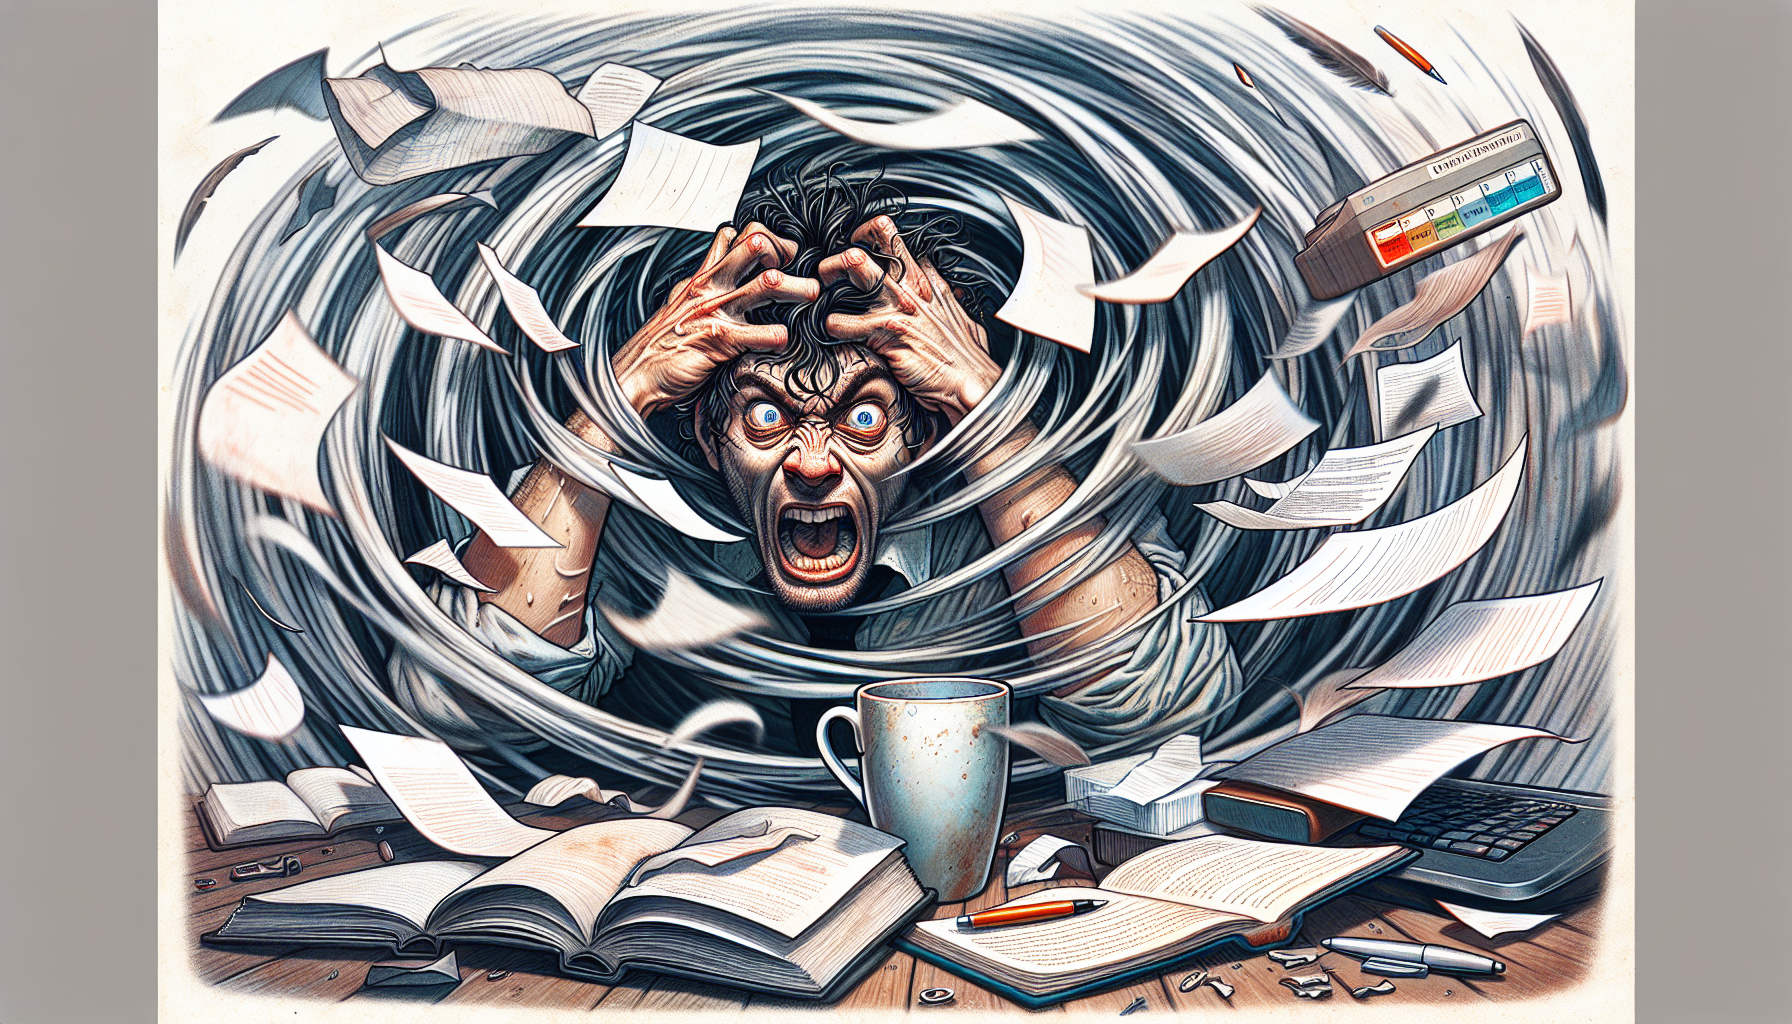 Illustration montrant une personne stressée entourée de tâches inachevées, illustrant l'impact de la procrastination sur la vie quotidienne